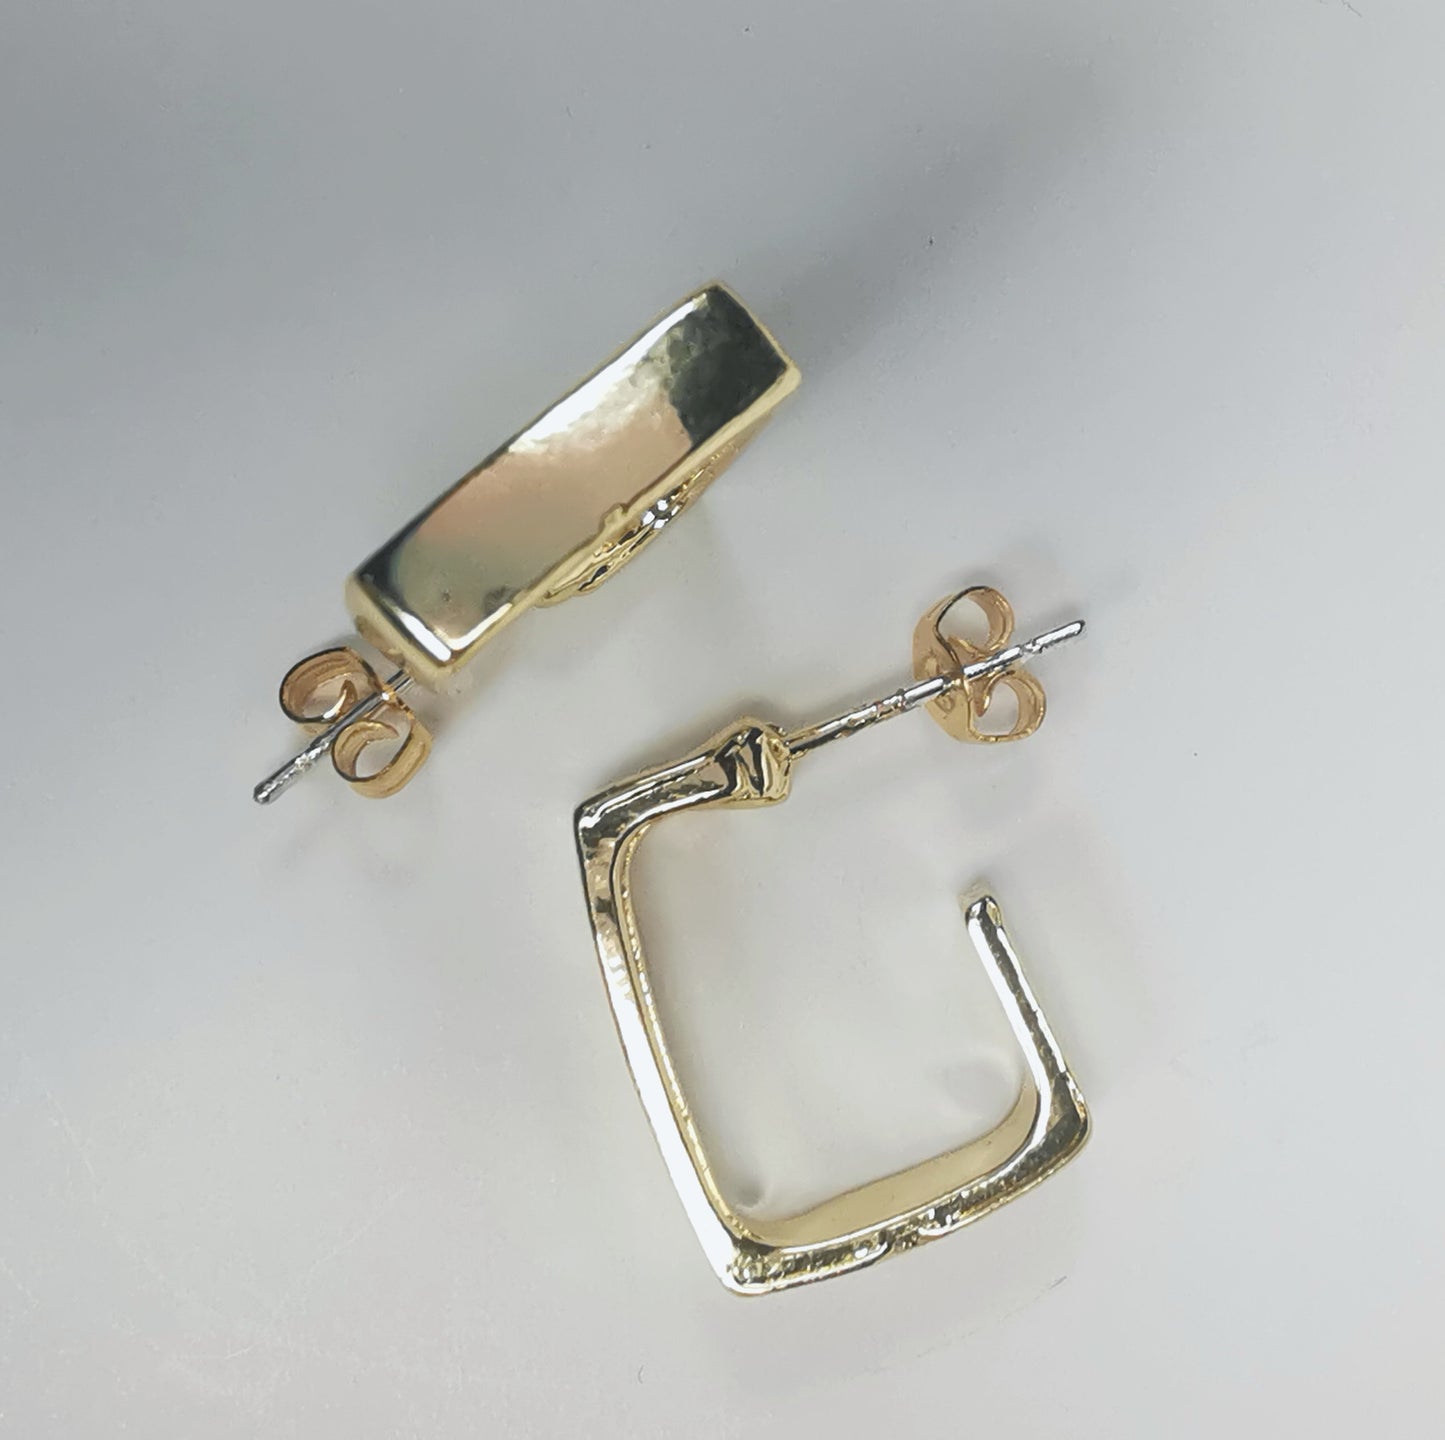 Boucles d'oreilles dorées, carrées, de 15mm de coté ,avec section rectangulaire, présentées posées sur fond blanc, l'une à plat, l'autre sur champ Vue de dessus.